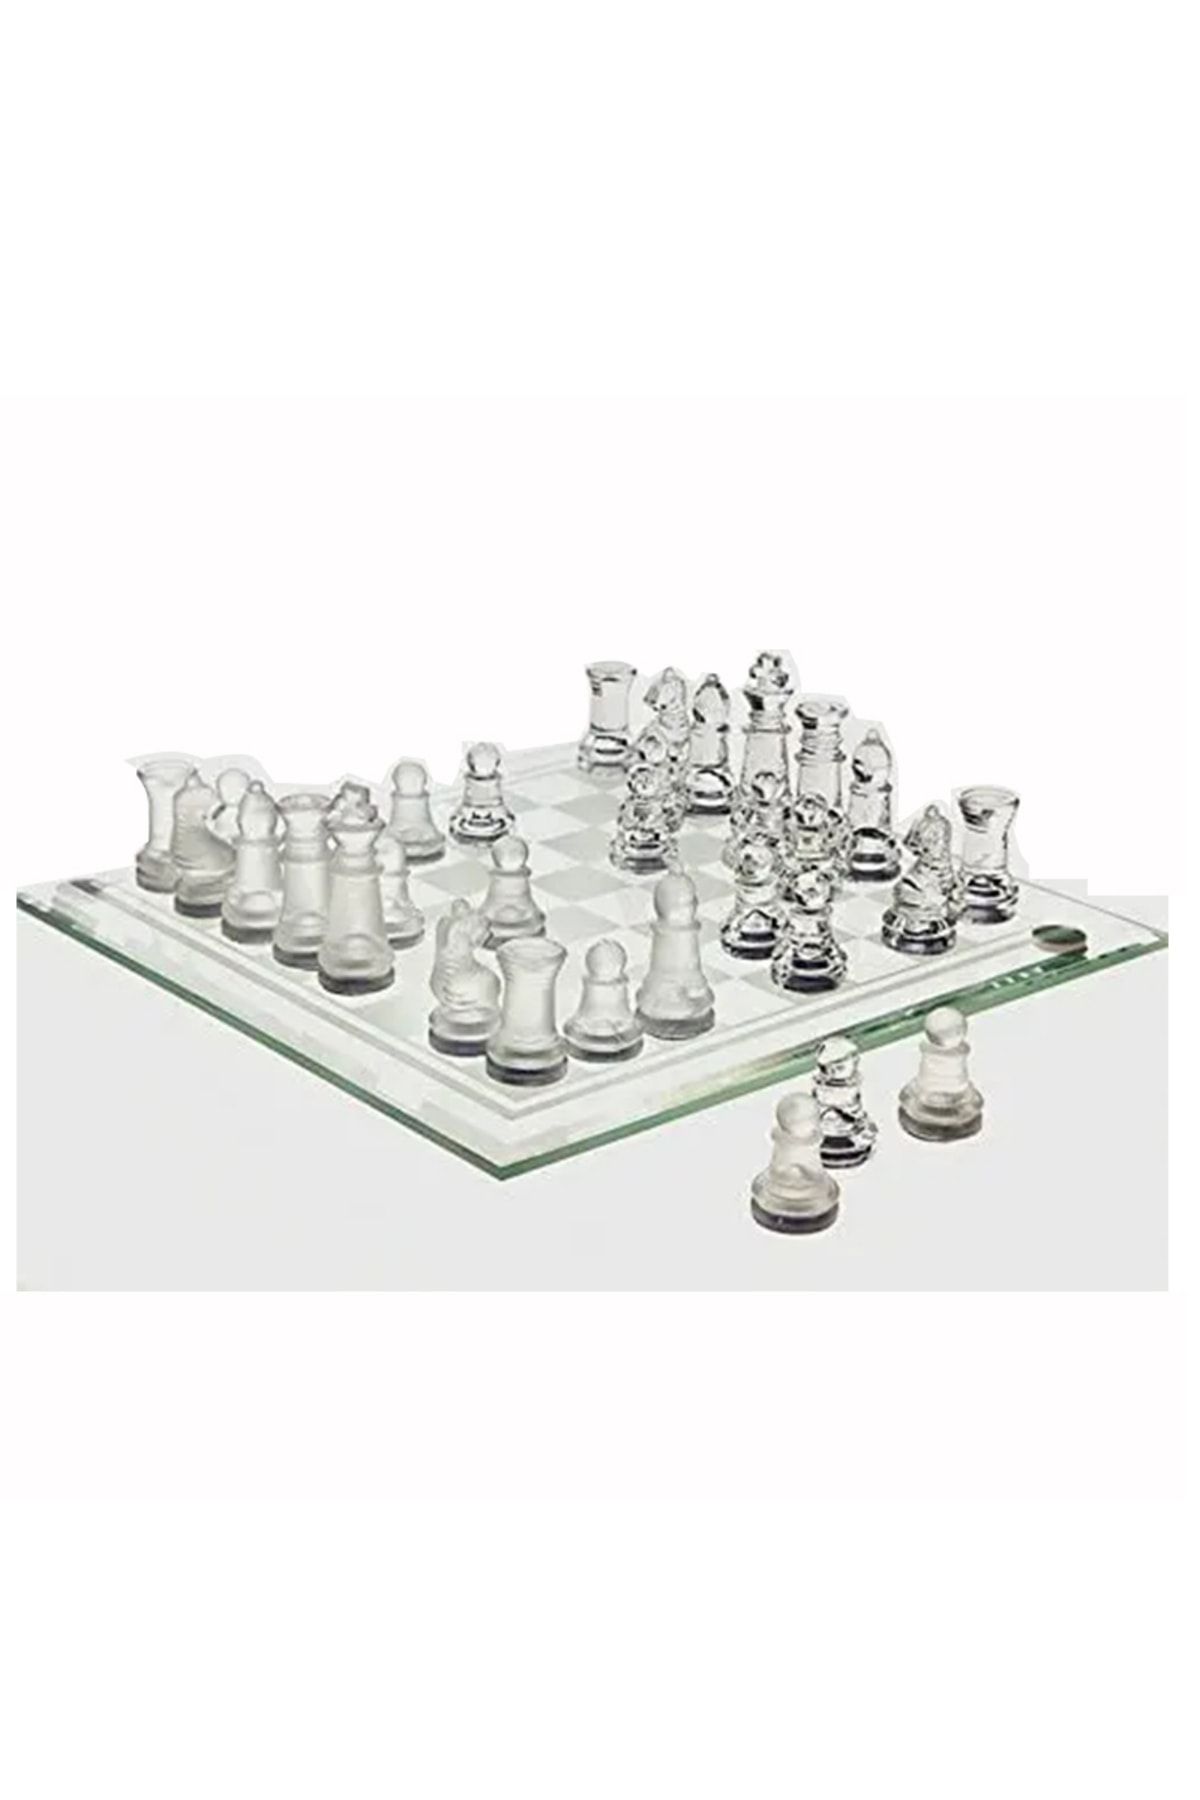 Sera Cam Satranç Takımı 30 X 30 Cm Glass Chess